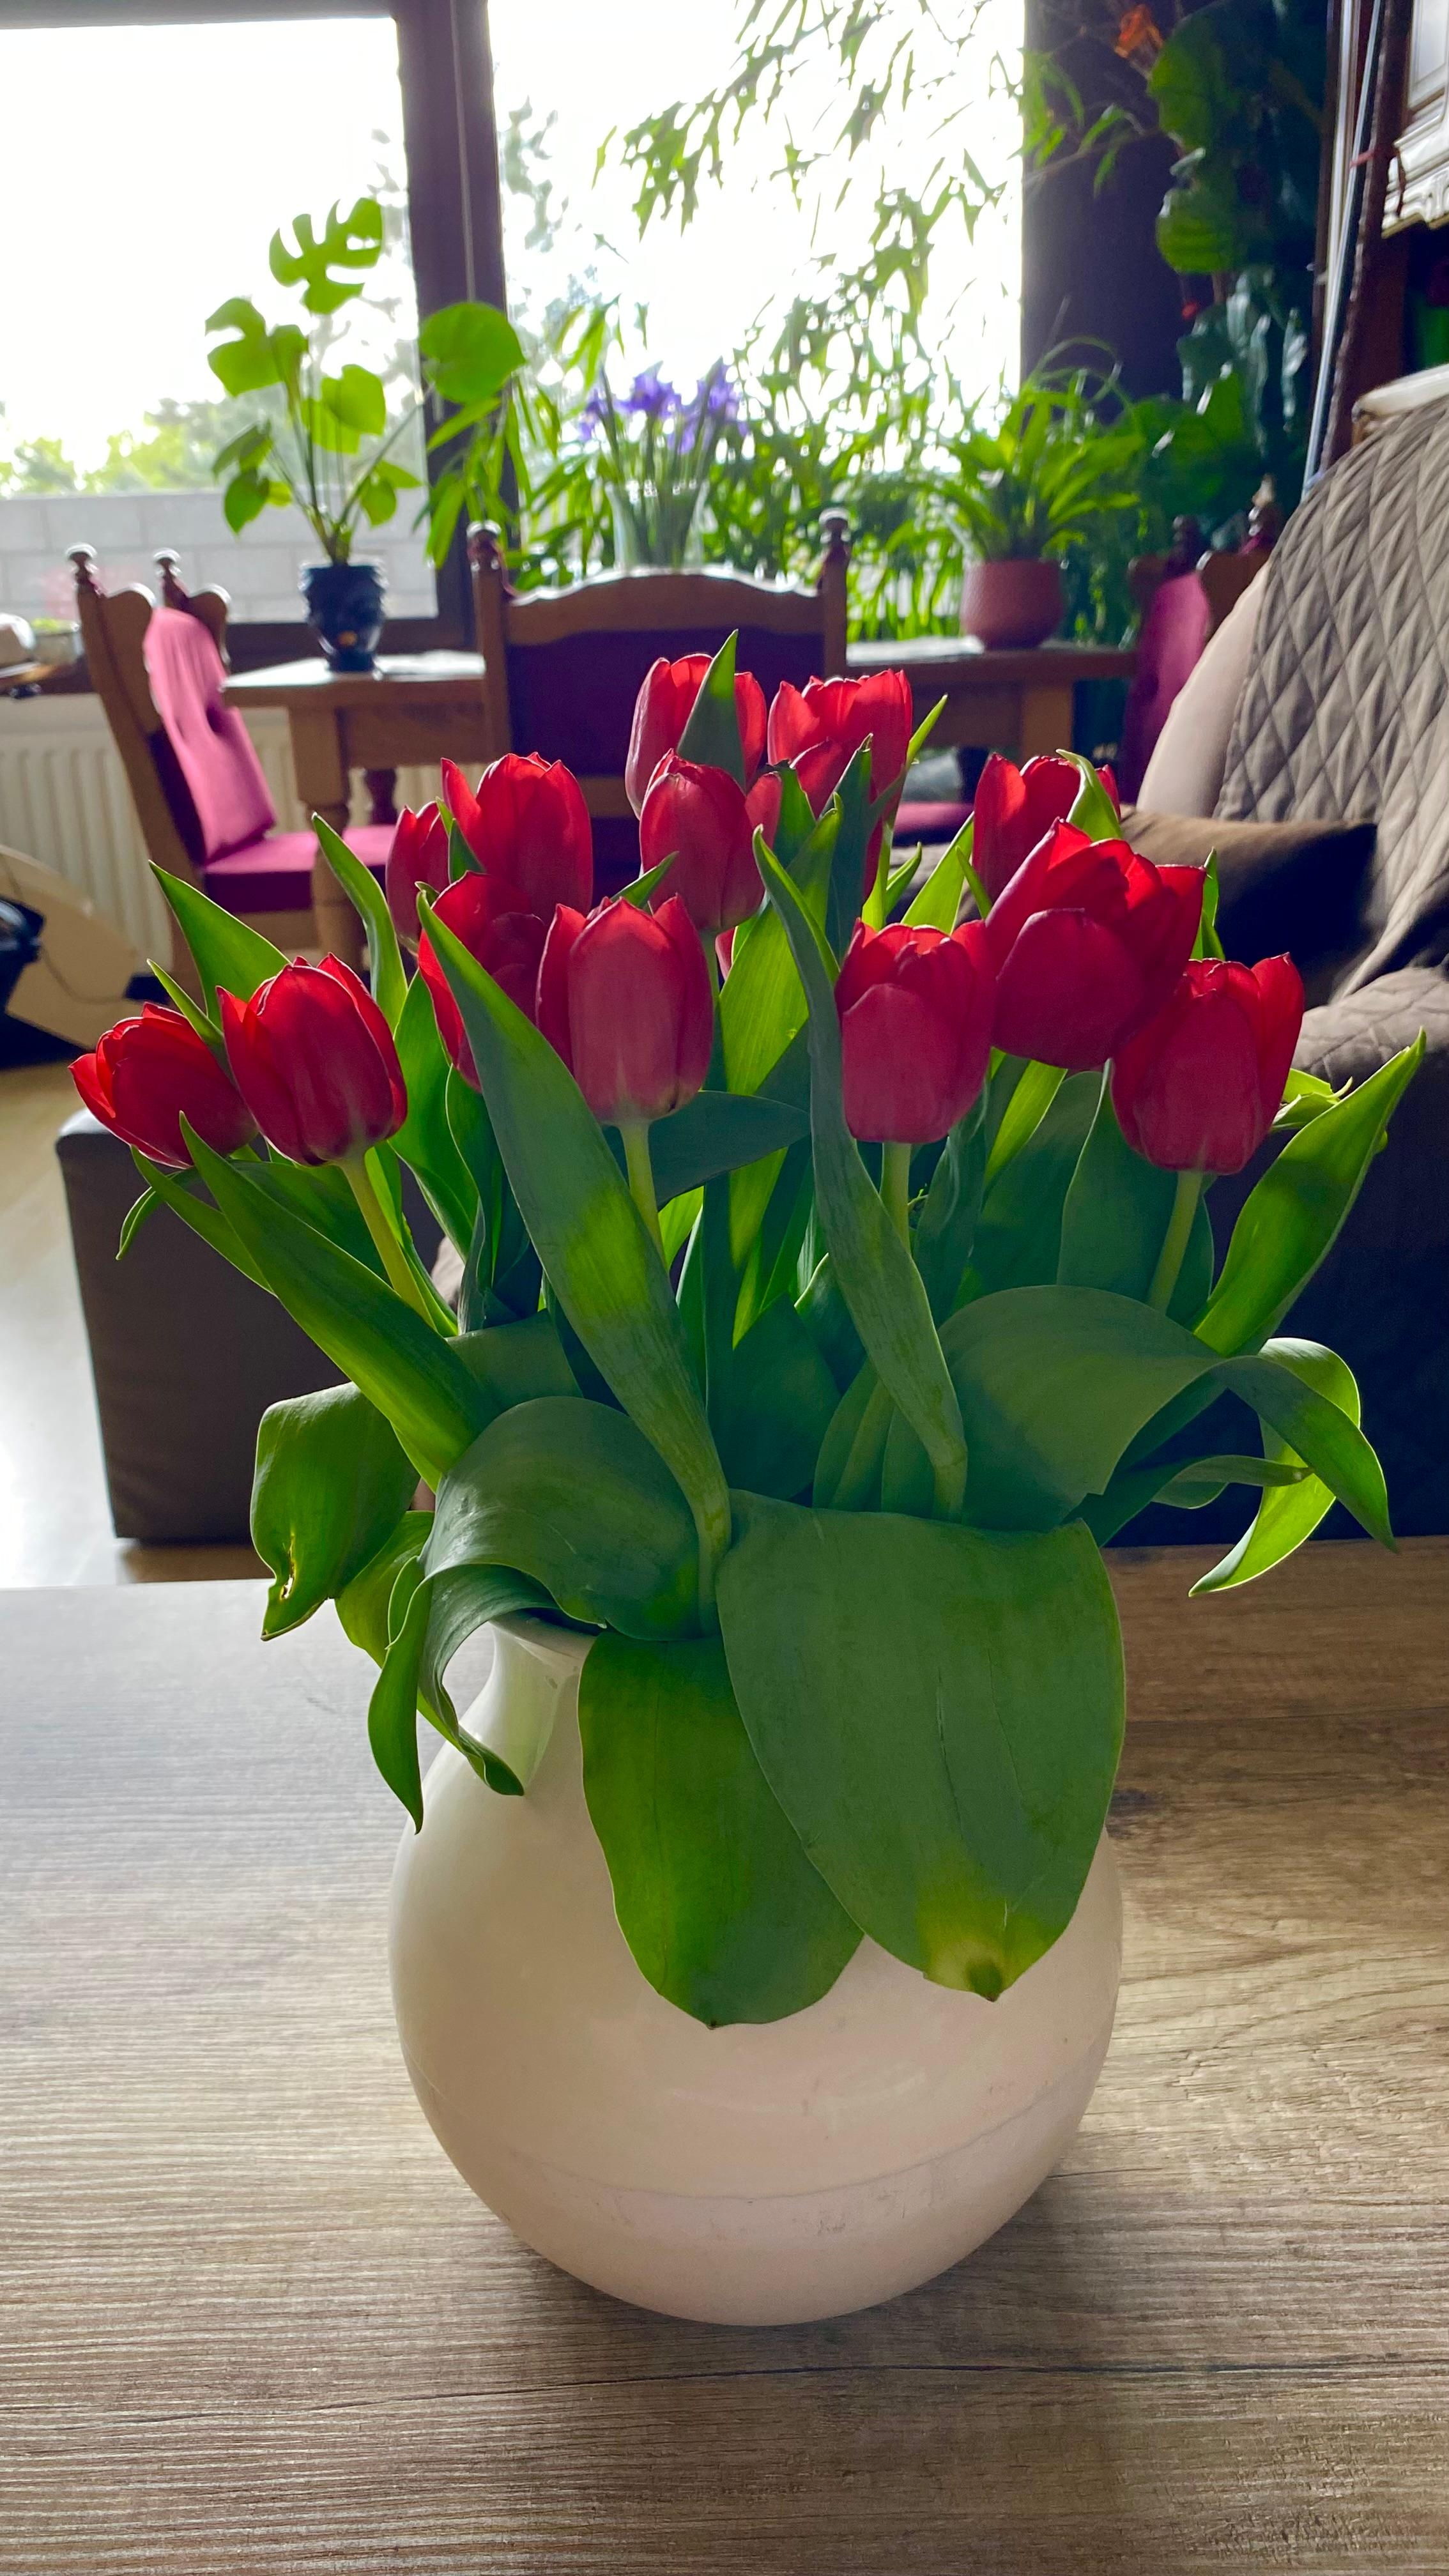 #tulpen 🌷 #couchliebt #vase #wohnzimmer
Mein letzter Tulpenstrauss dieses Jahr!